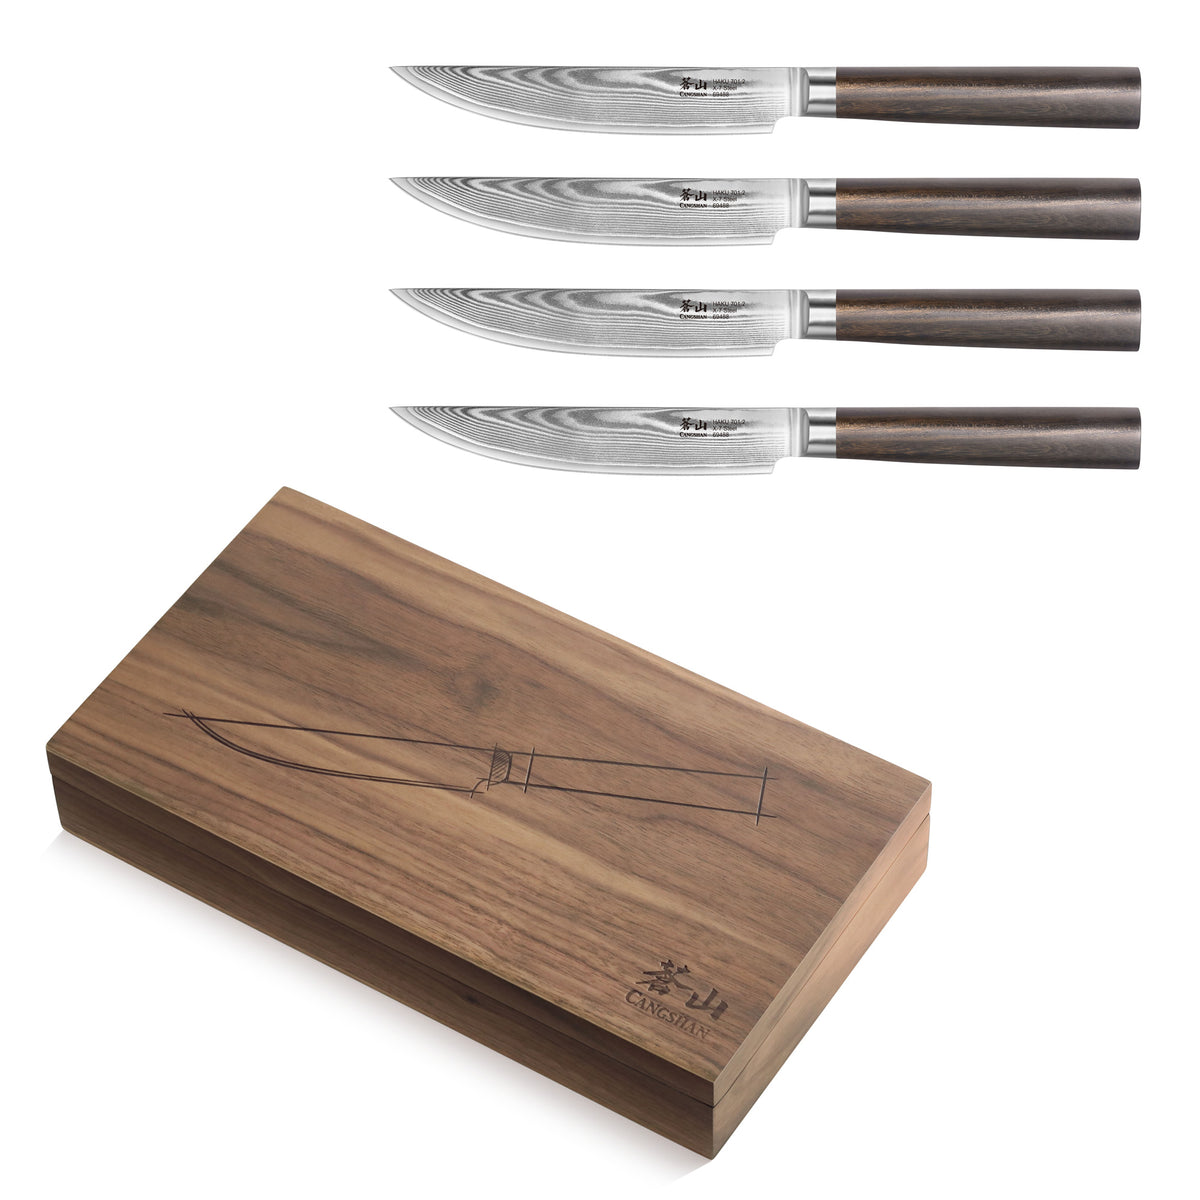 Bass Kitchen Knife Set Of 7 Piece - Beige